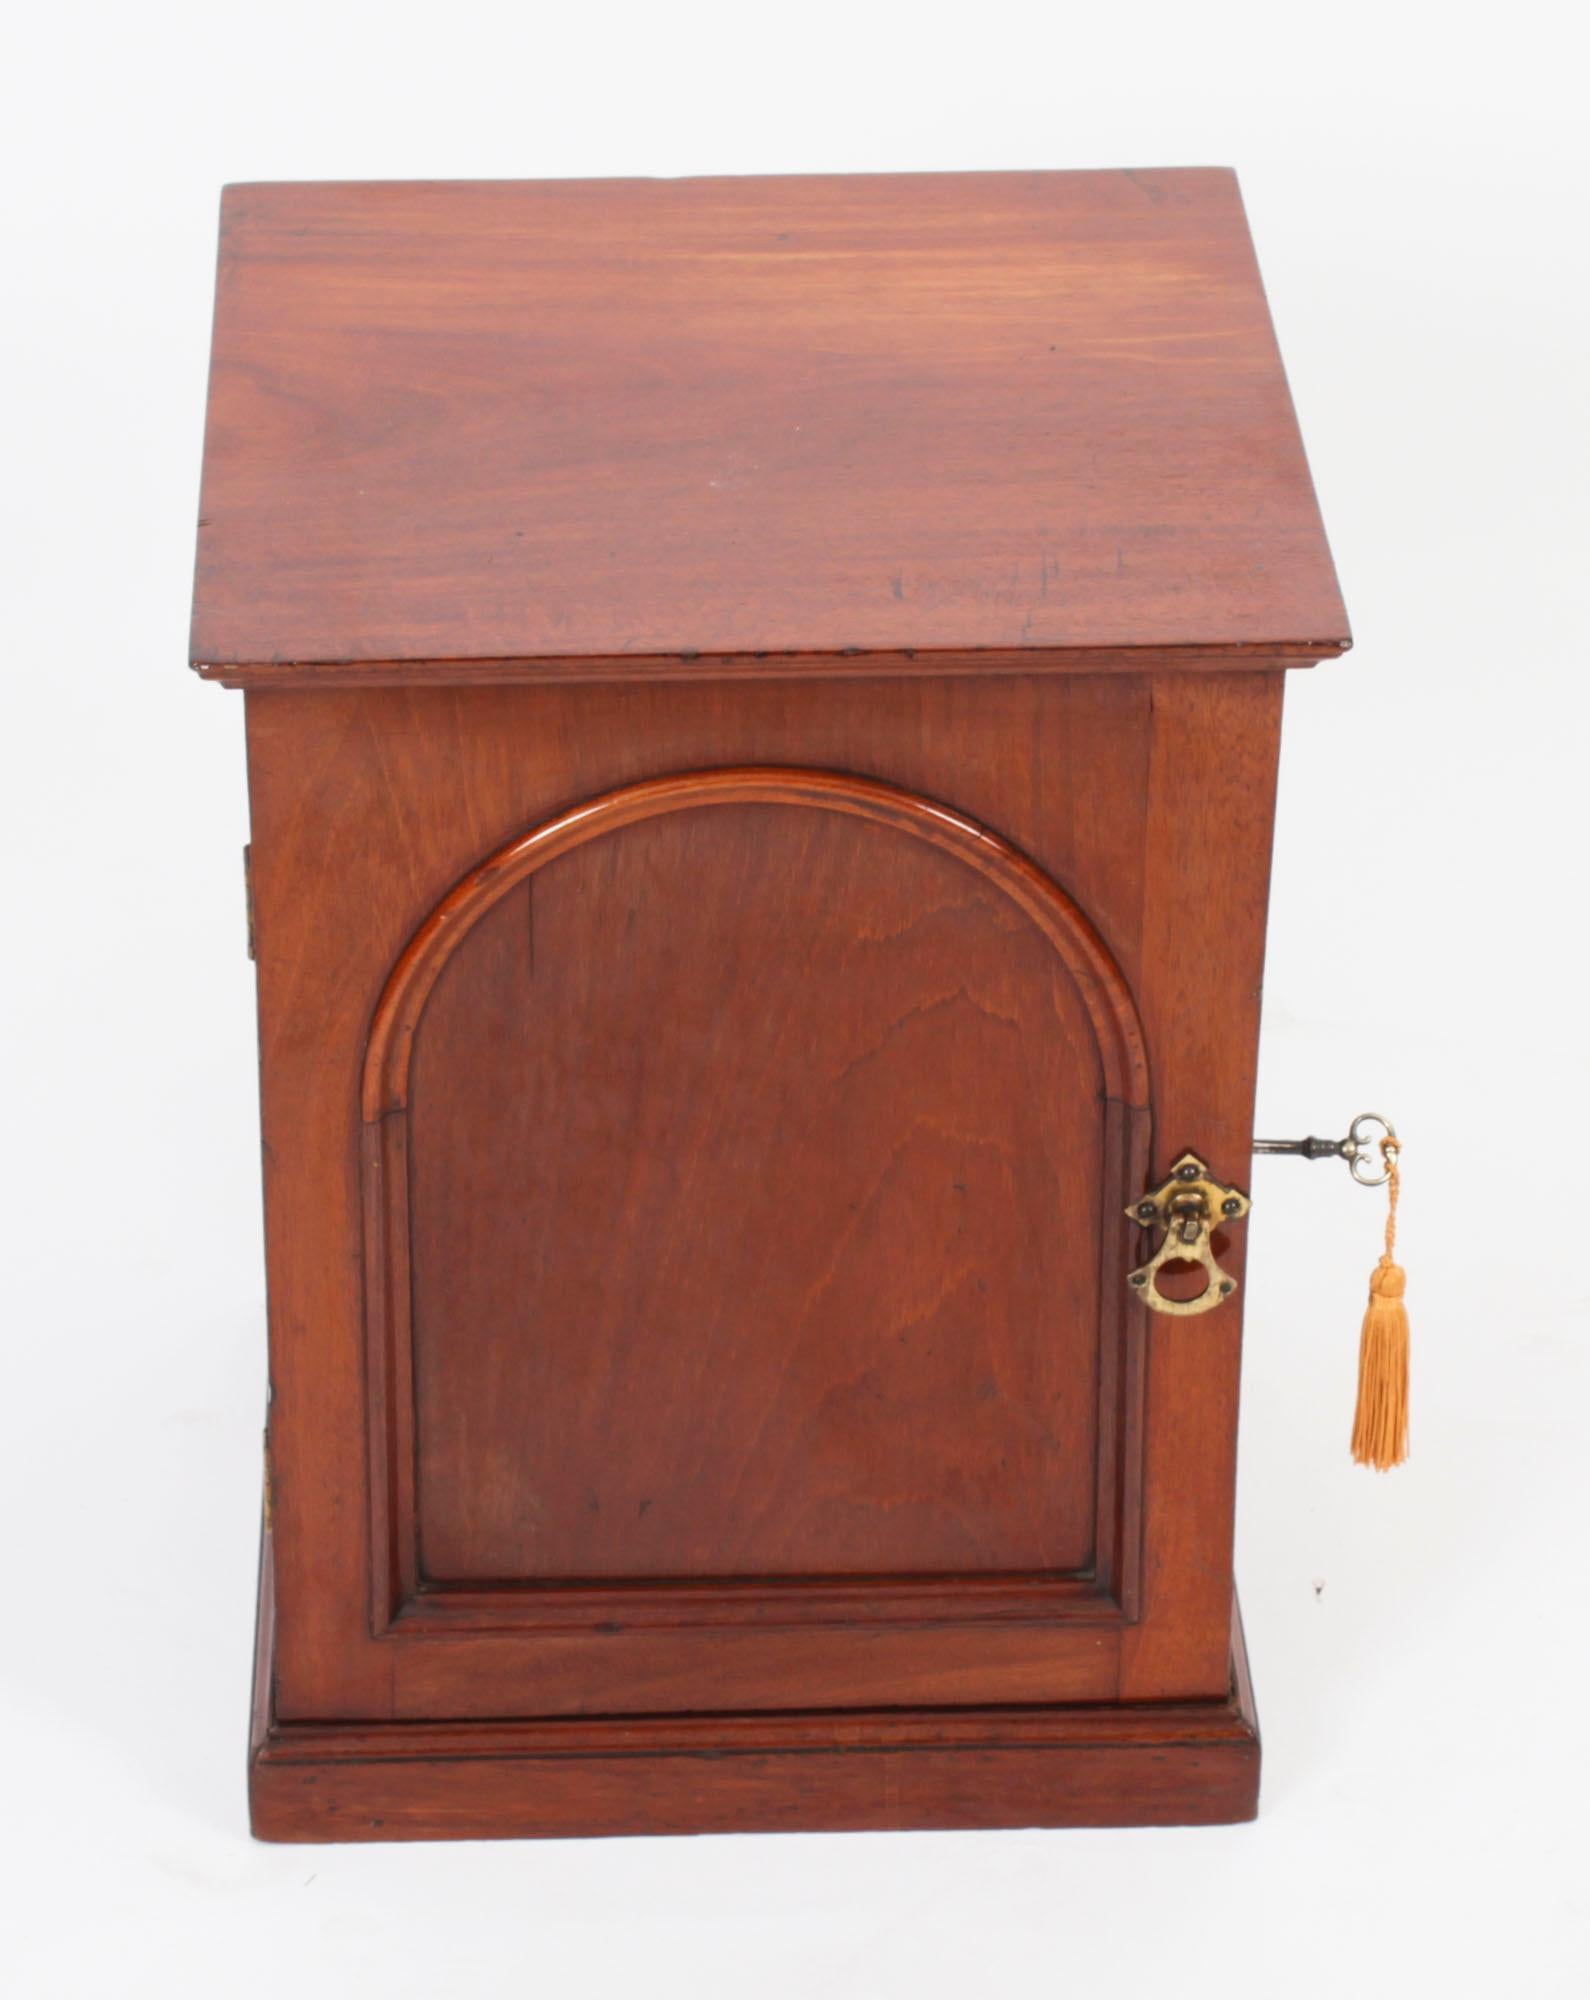 Dies ist eine elegante viktorianische Mahagoni Tischplatte Schmuck Sammler Schrank, ca. 1840 in Datum.
 
Der Schrank ist freistehend, rundum verarbeitet und verfügt über eine getäfelte Tür, die drei Schubladen auf einem Sockel einschließt. Die